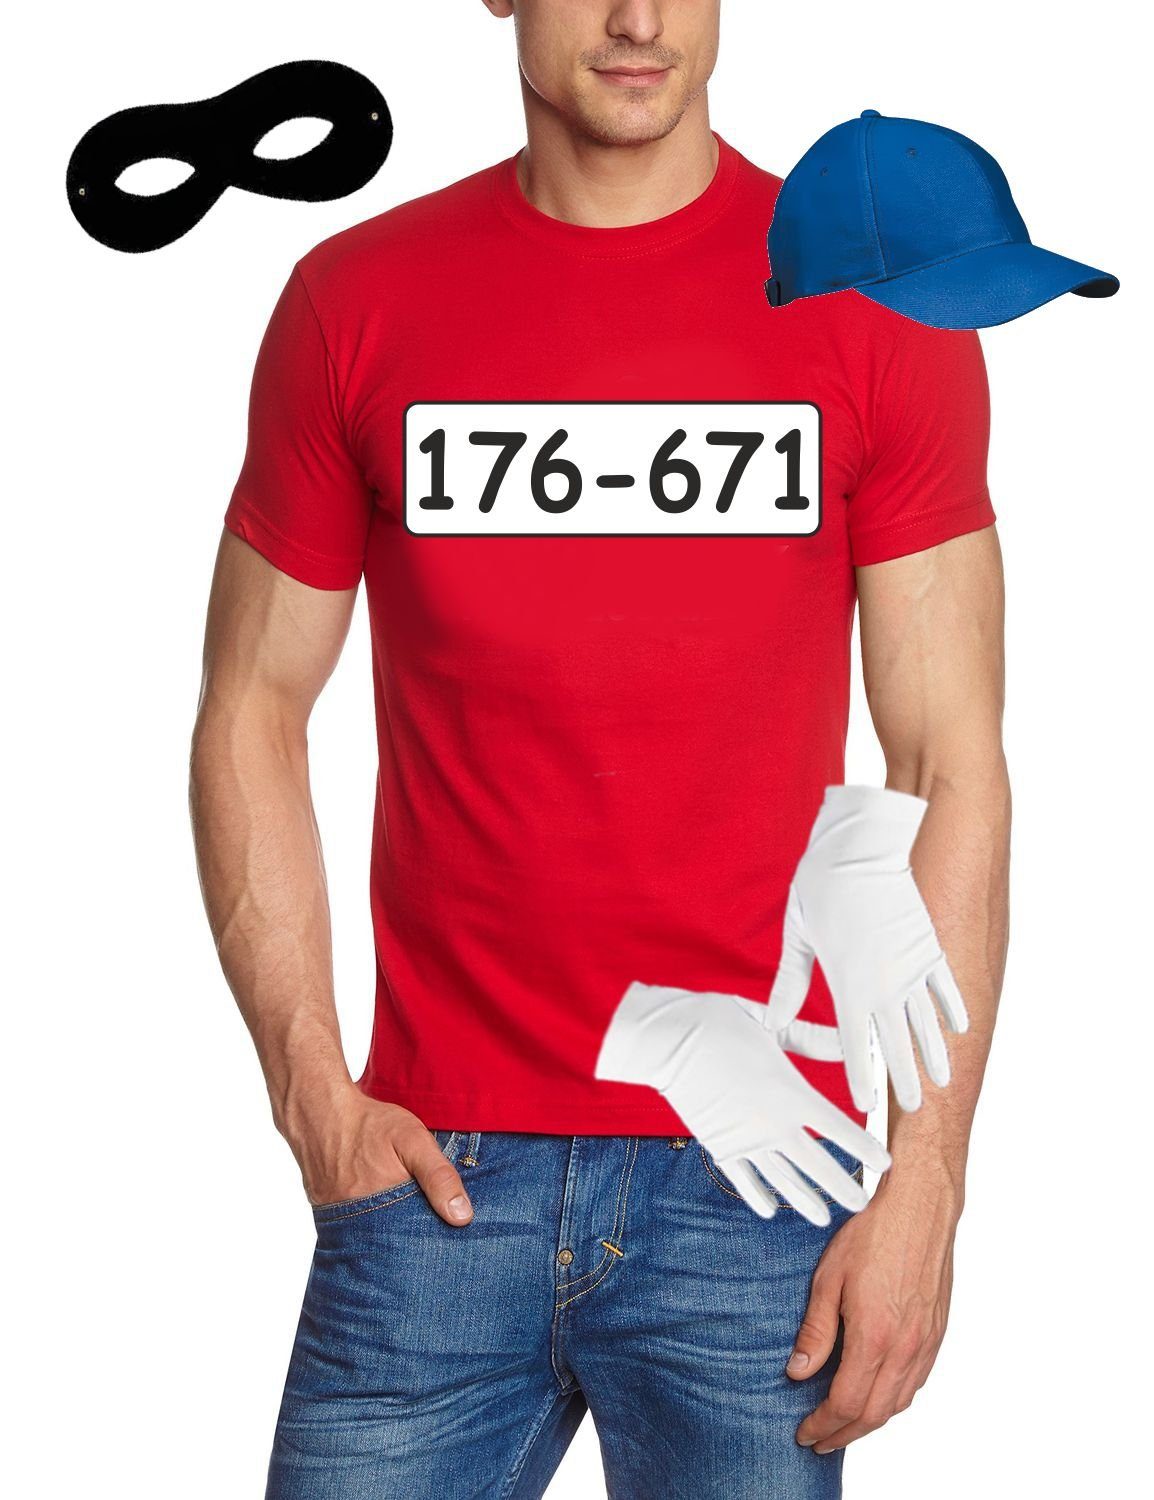 coole-fun-t-shirts Kostüm Set Gangster Bande KOSTÜM - Fasching - Karneval - T-Shirt, MÜTZE, Maske + Handschuhe - rot Gr. S M L XL XXL 3XL 4XL 5XL